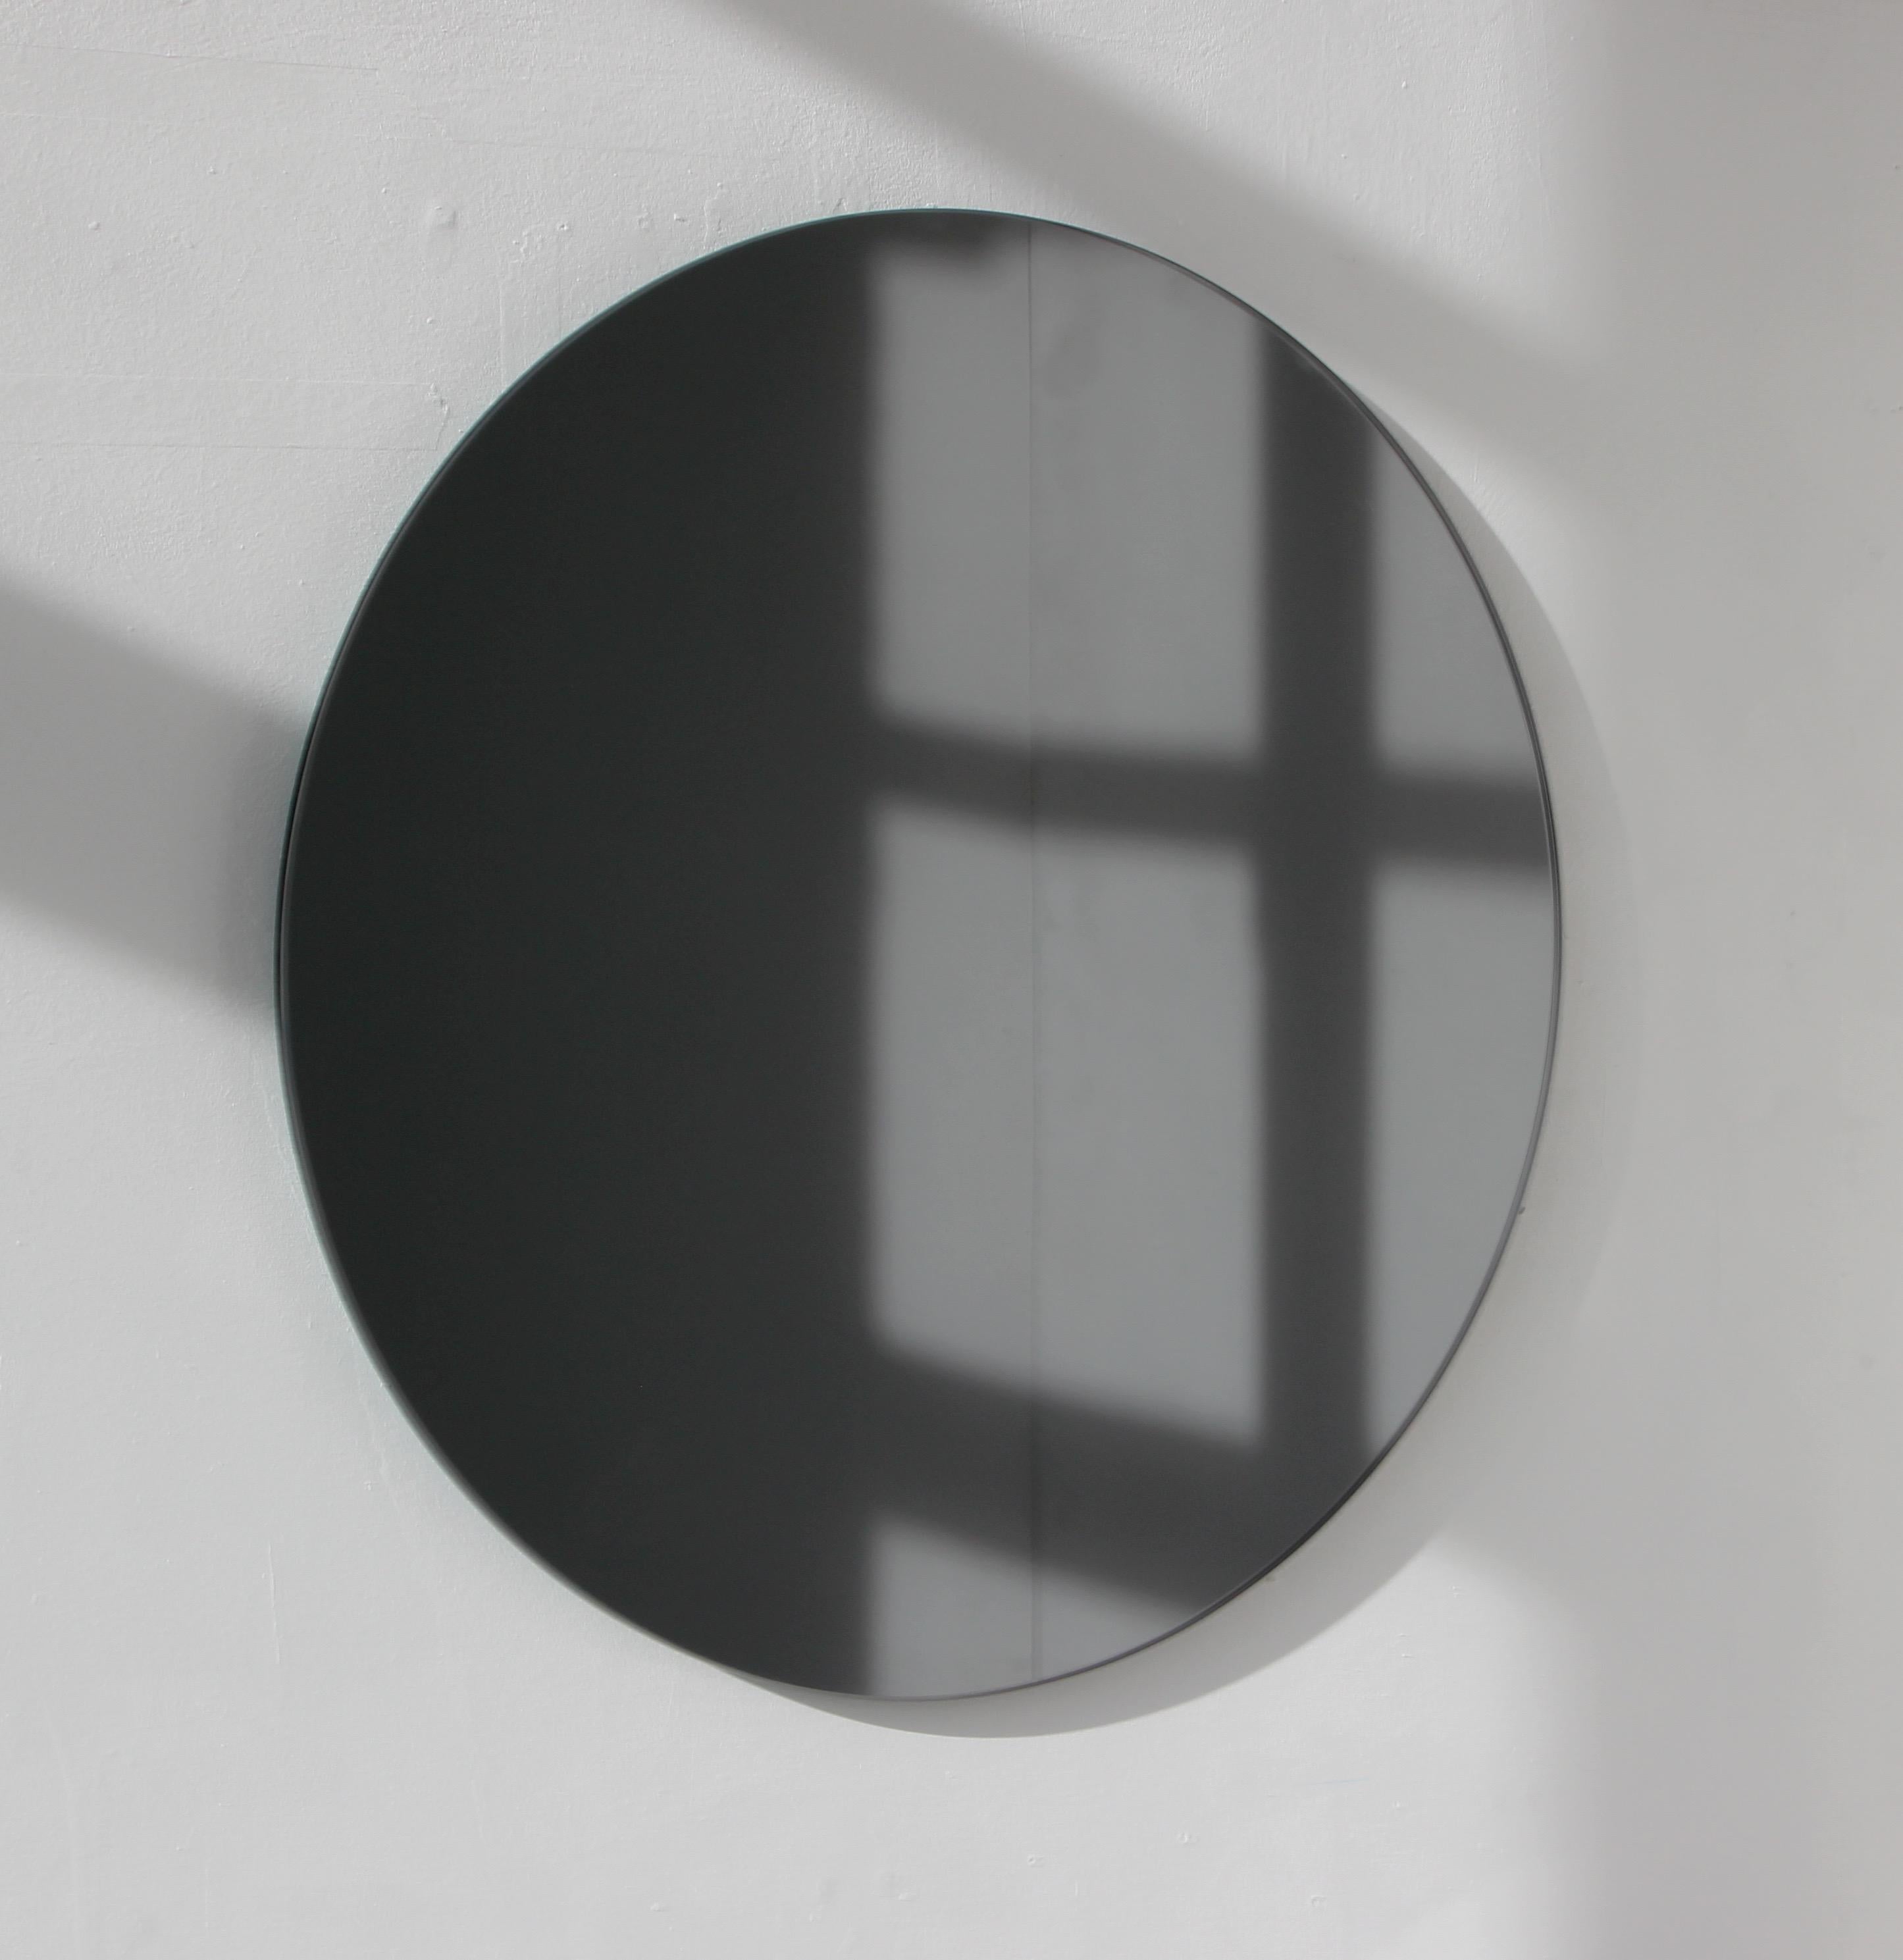 Charmanter und minimalistischer runder rahmenloser schwarz getönter Spiegel mit Schwebeeffekt. Hochwertiges Design, das dafür sorgt, dass der Spiegel perfekt parallel zur Wand steht. Entworfen und hergestellt in London, UK.

Ausgestattet mit